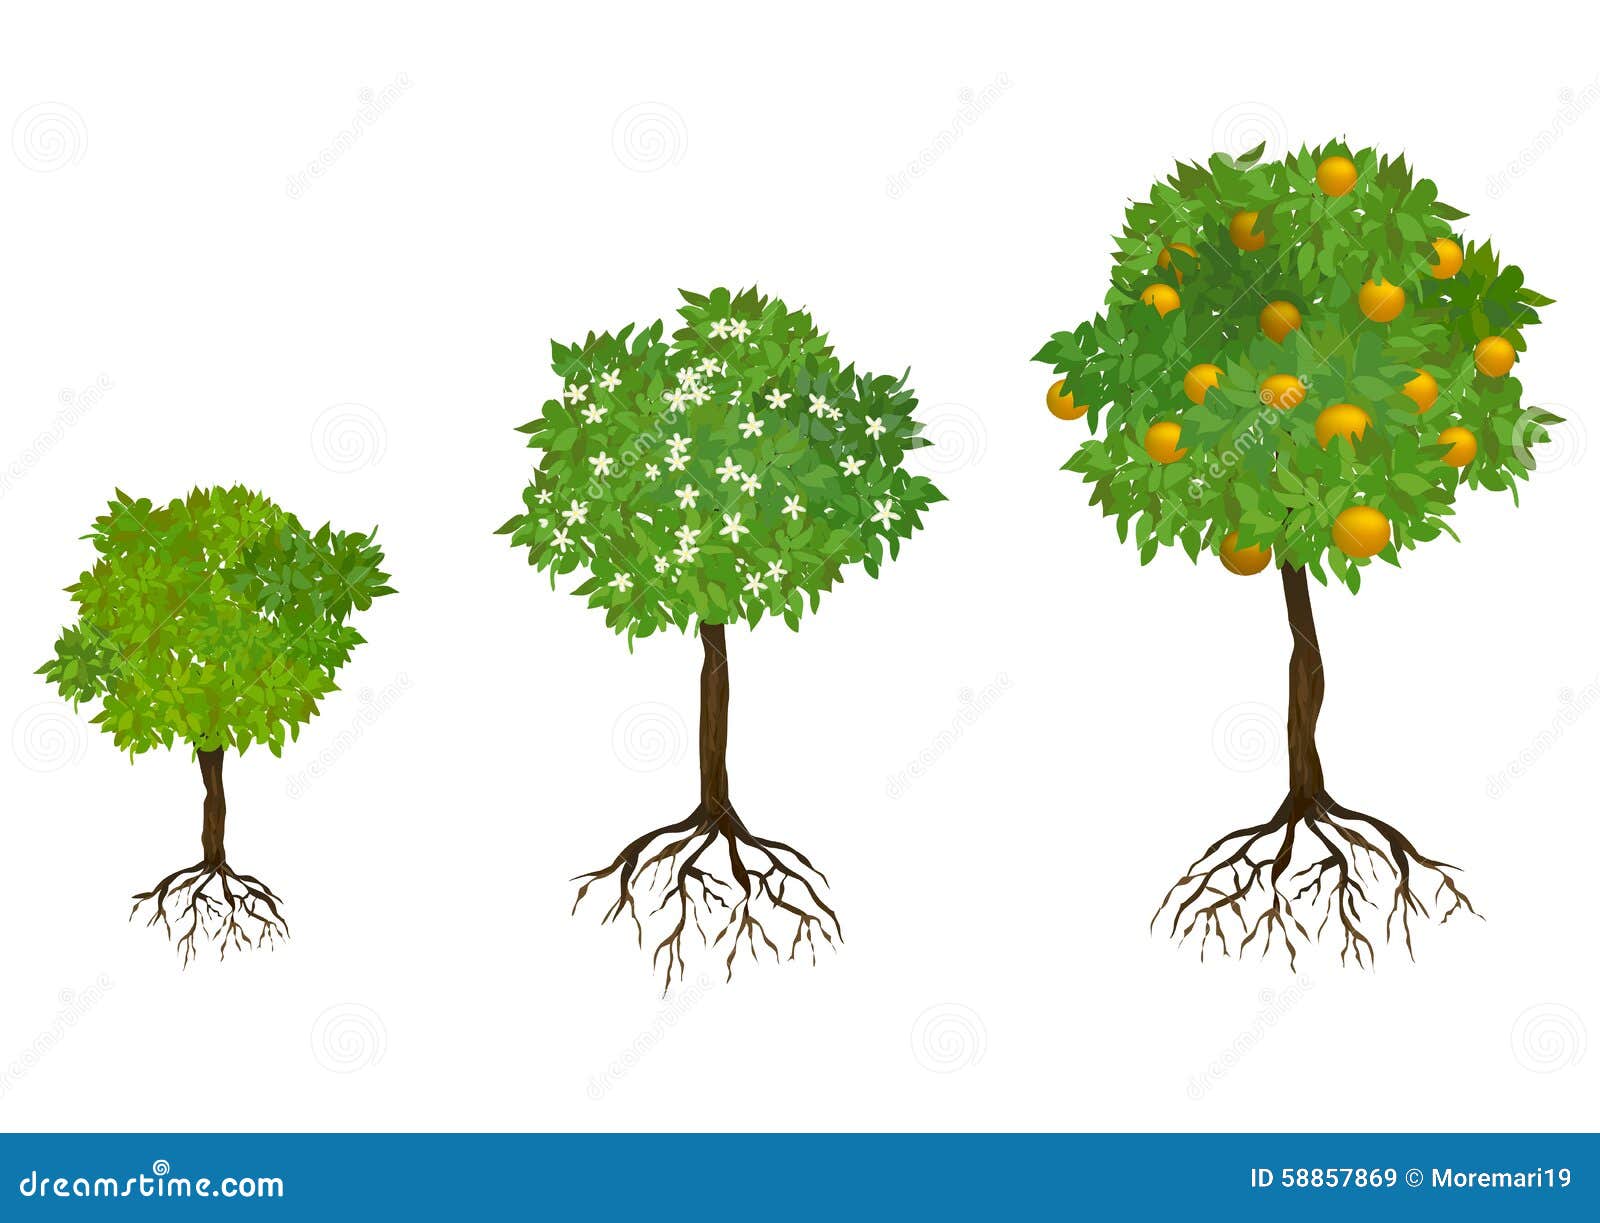 Дерево с корнями и плодами